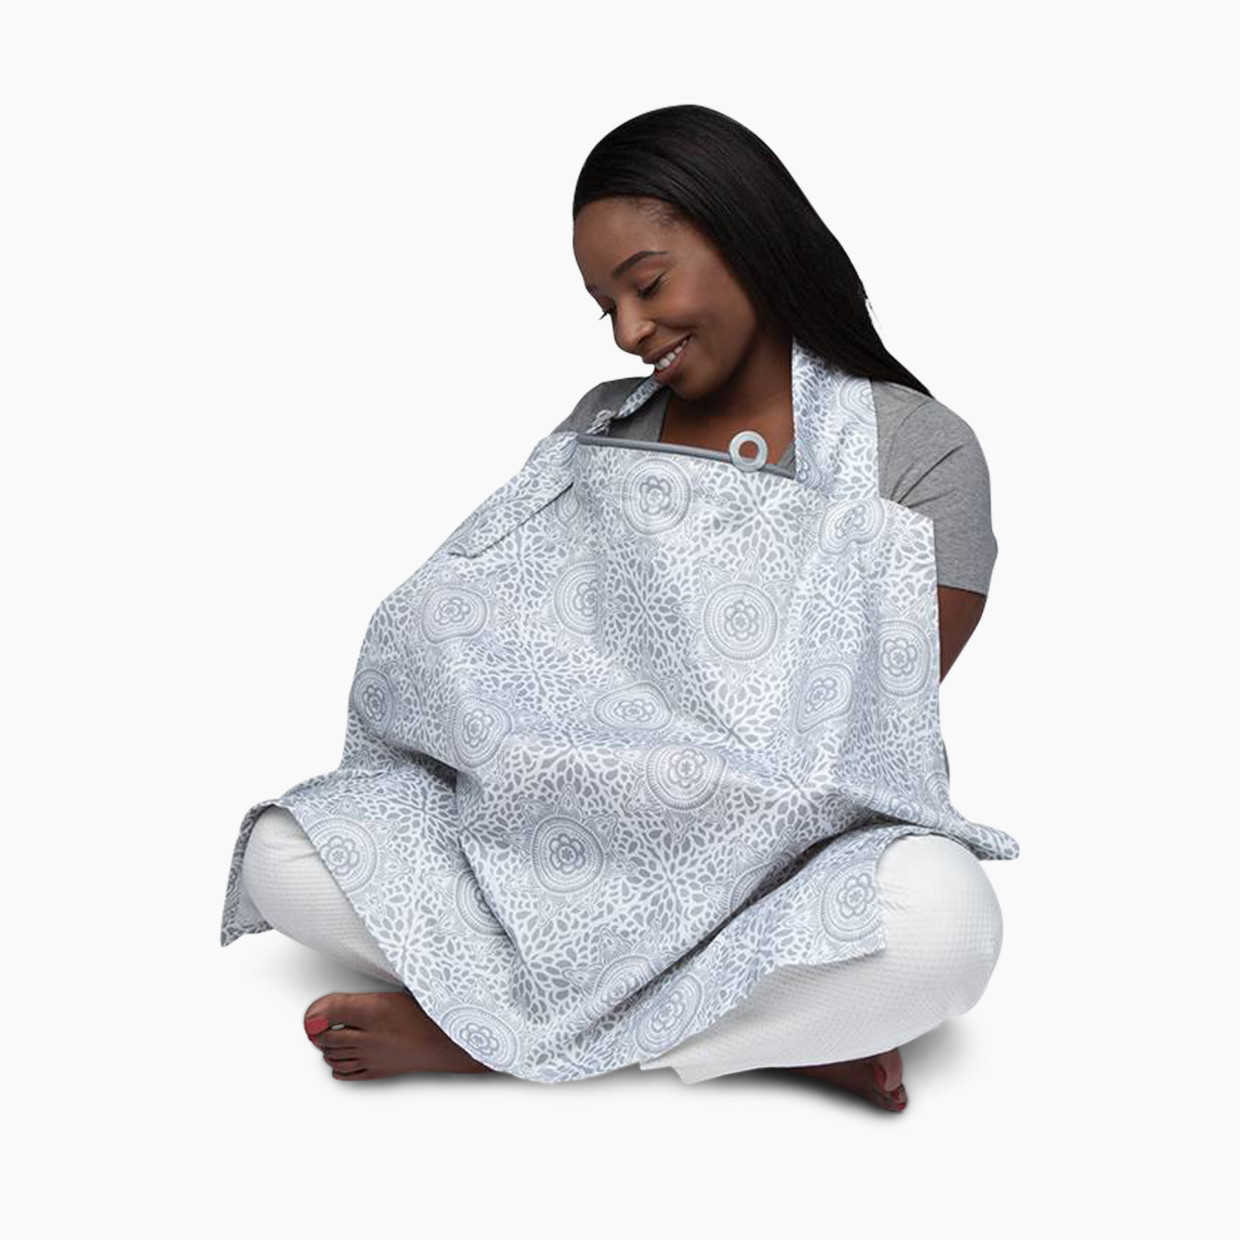 Boppy Nursing Cover For Breastfeeding - Boho Grey.